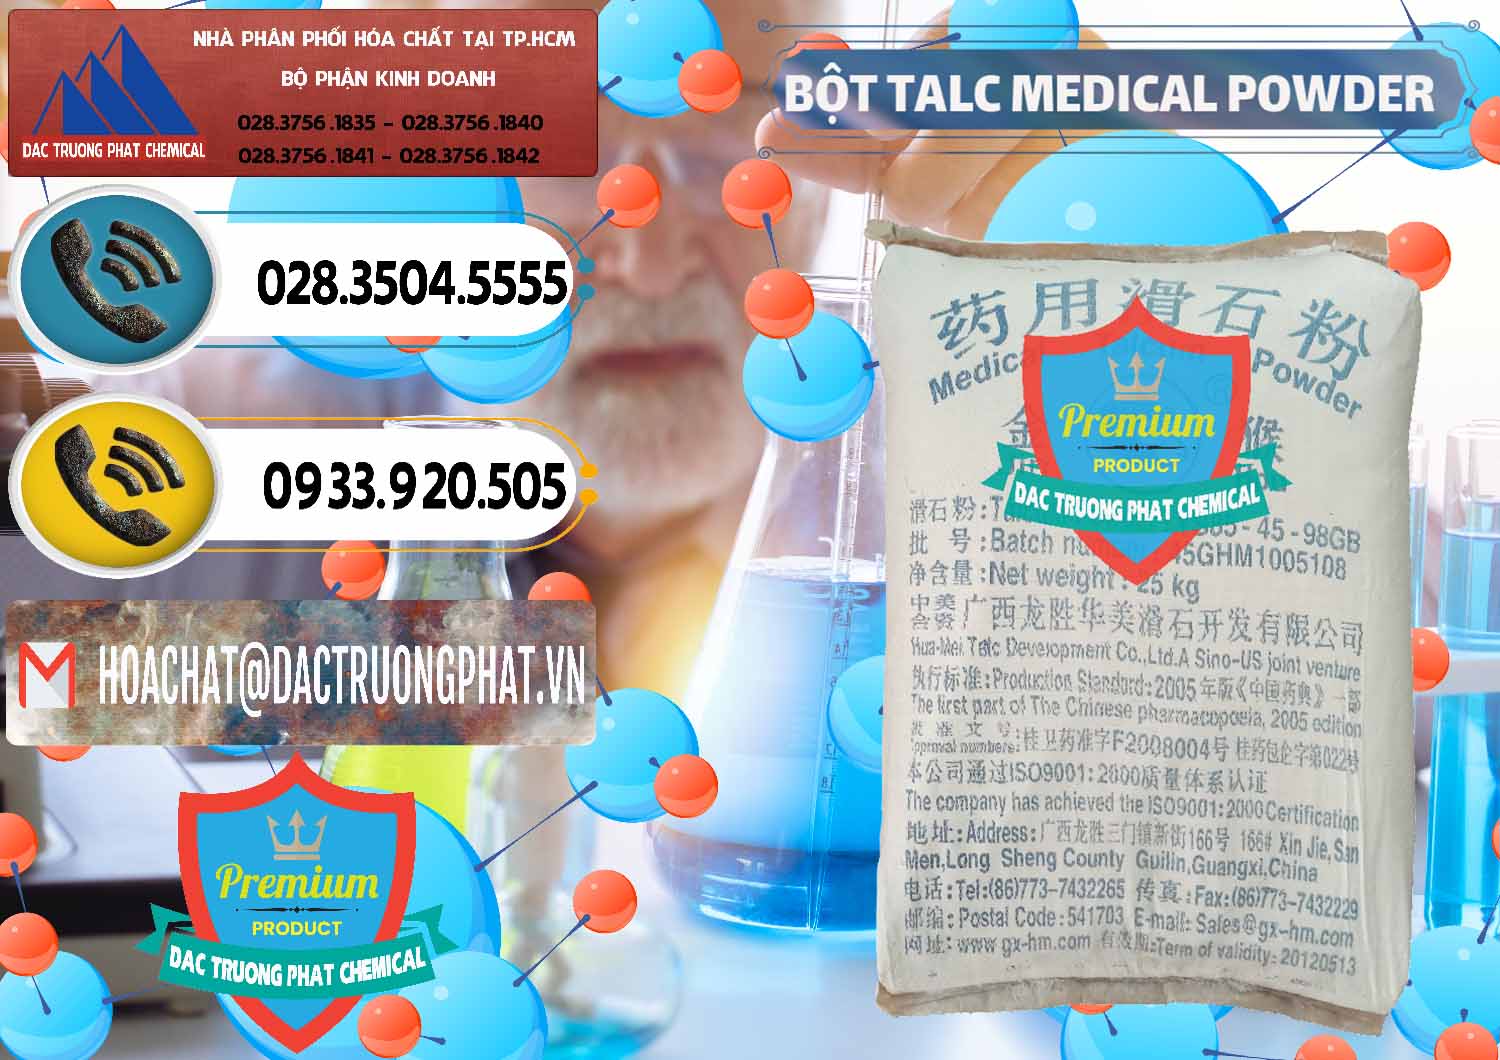 Công ty chuyên bán ( phân phối ) Bột Talc Medical Powder Trung Quốc China - 0036 - Nơi chuyên phân phối và nhập khẩu hóa chất tại TP.HCM - hoachatdetnhuom.vn